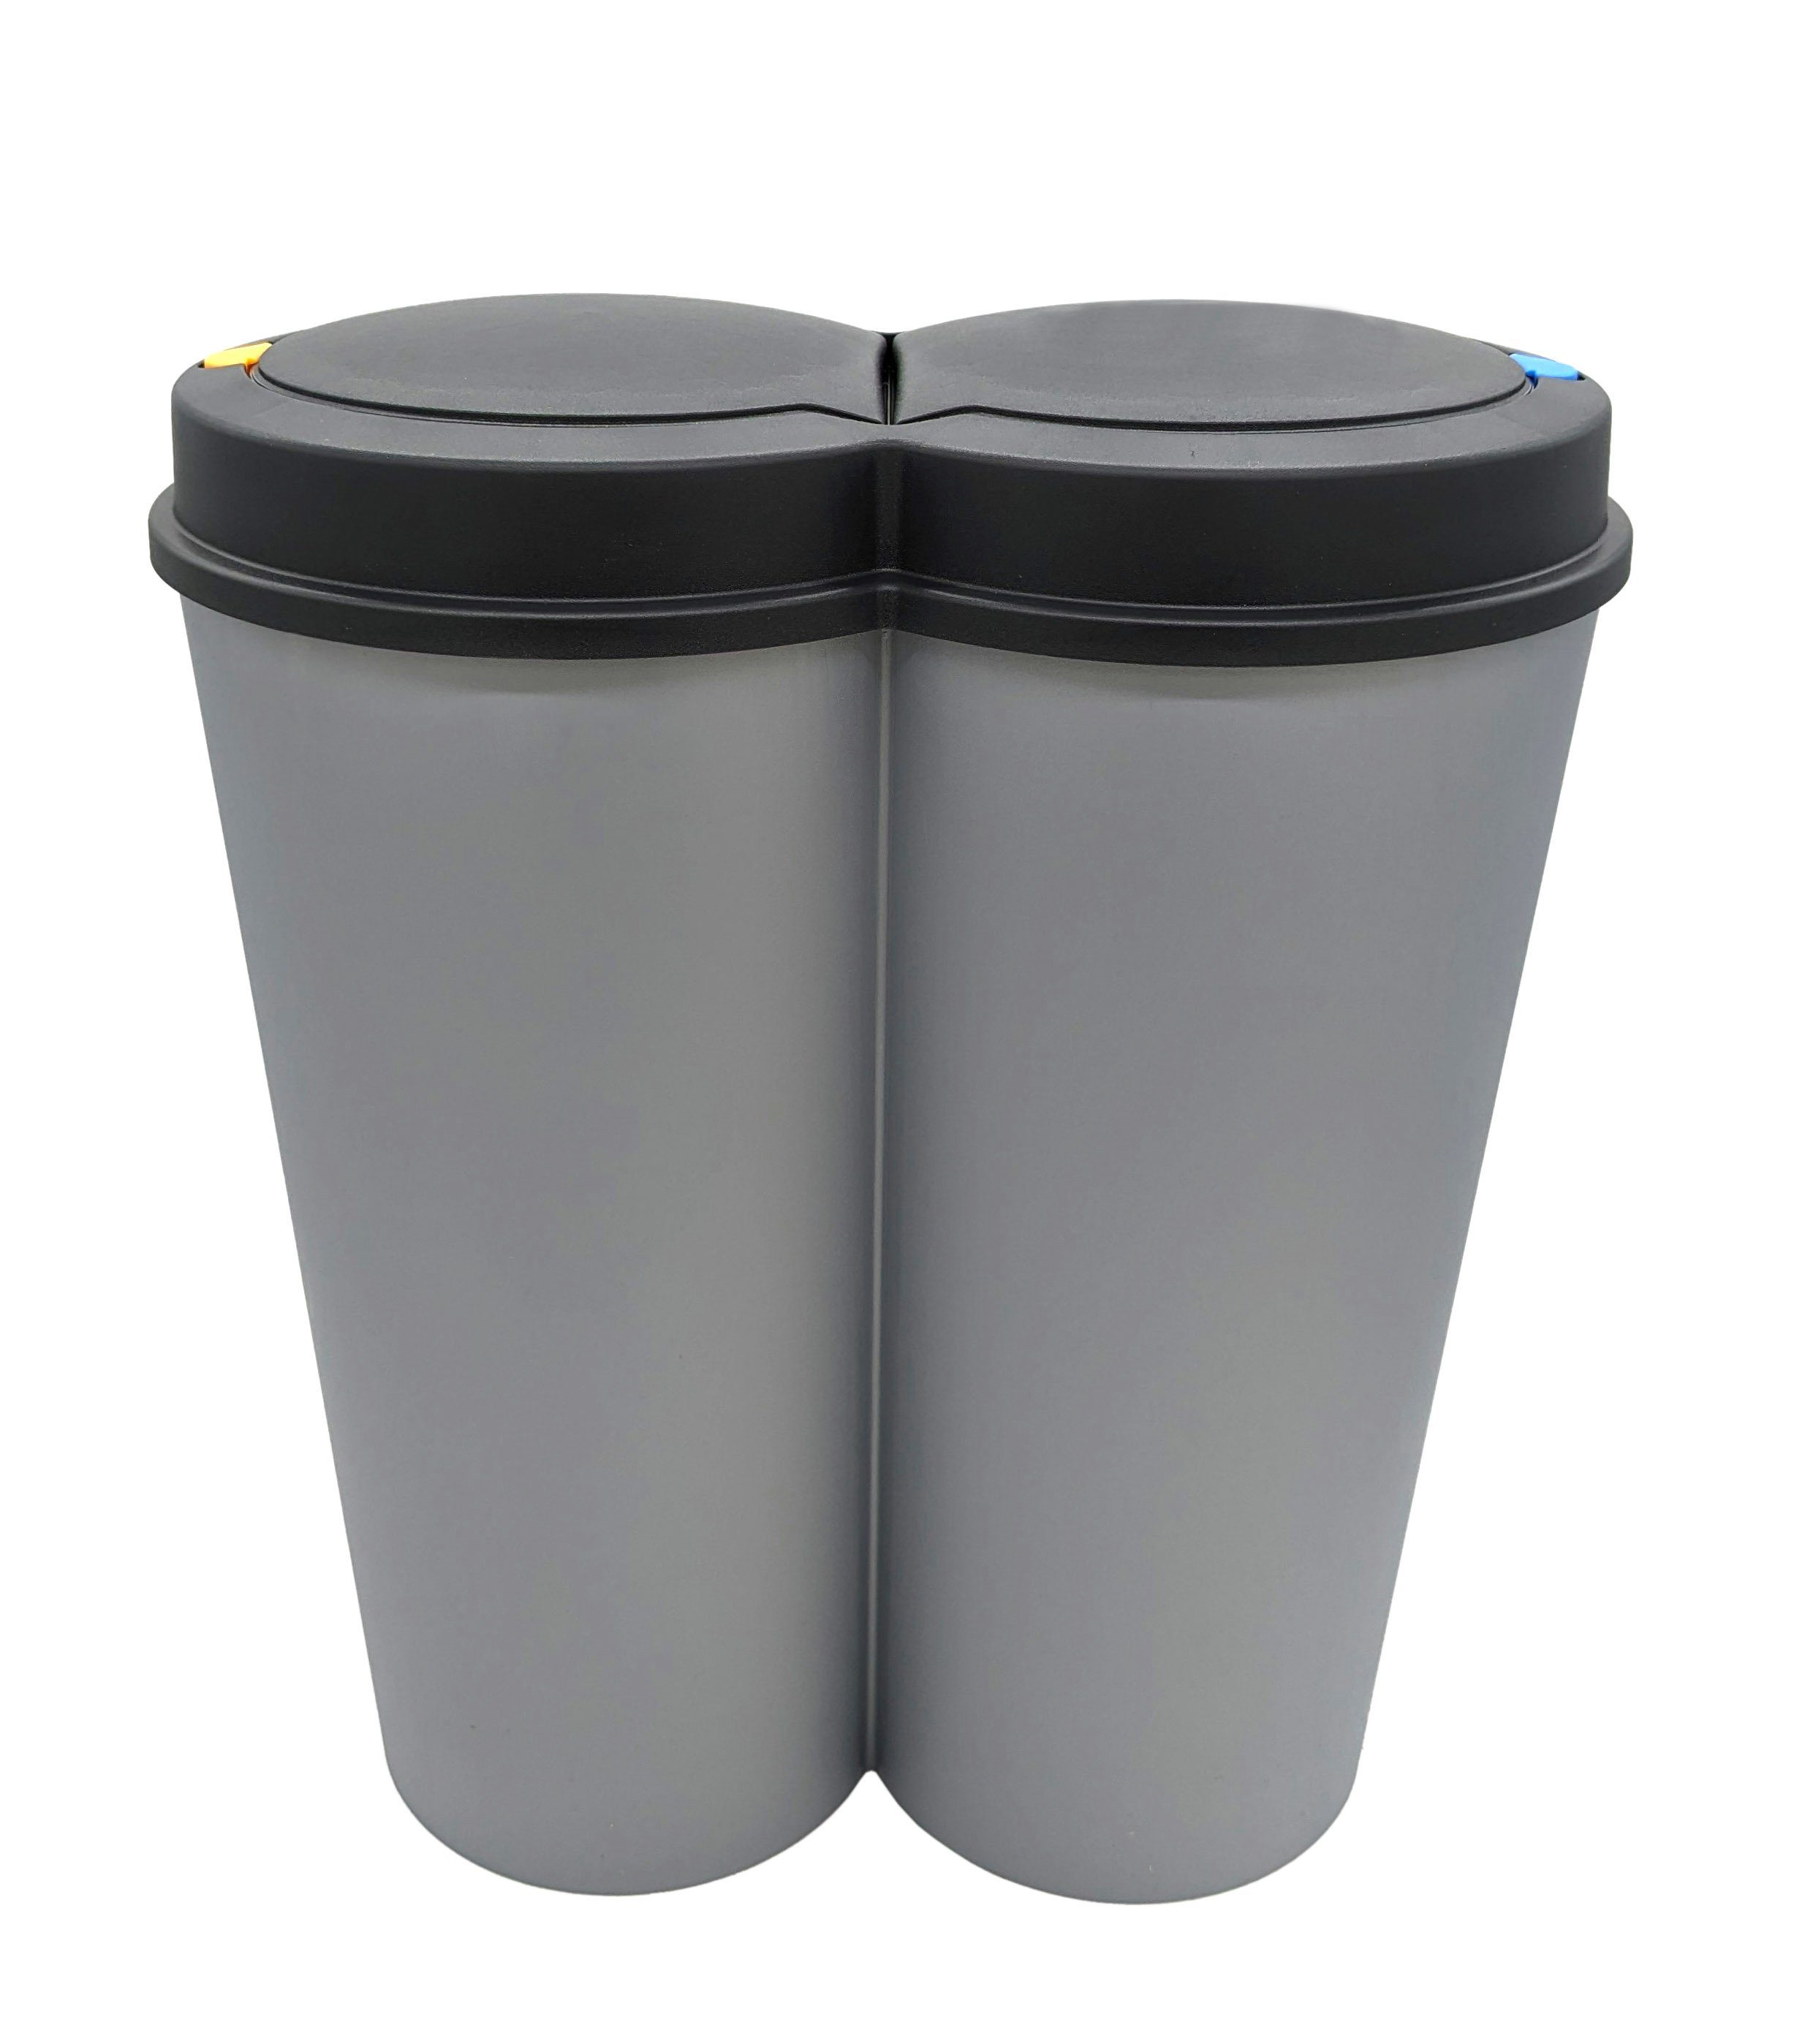 Spetebo Mülltrennsystem Abfalleimer 2x25 Liter Duo Bin - grau, Mülleimer mit praktischem Deckel mit Druckknopf